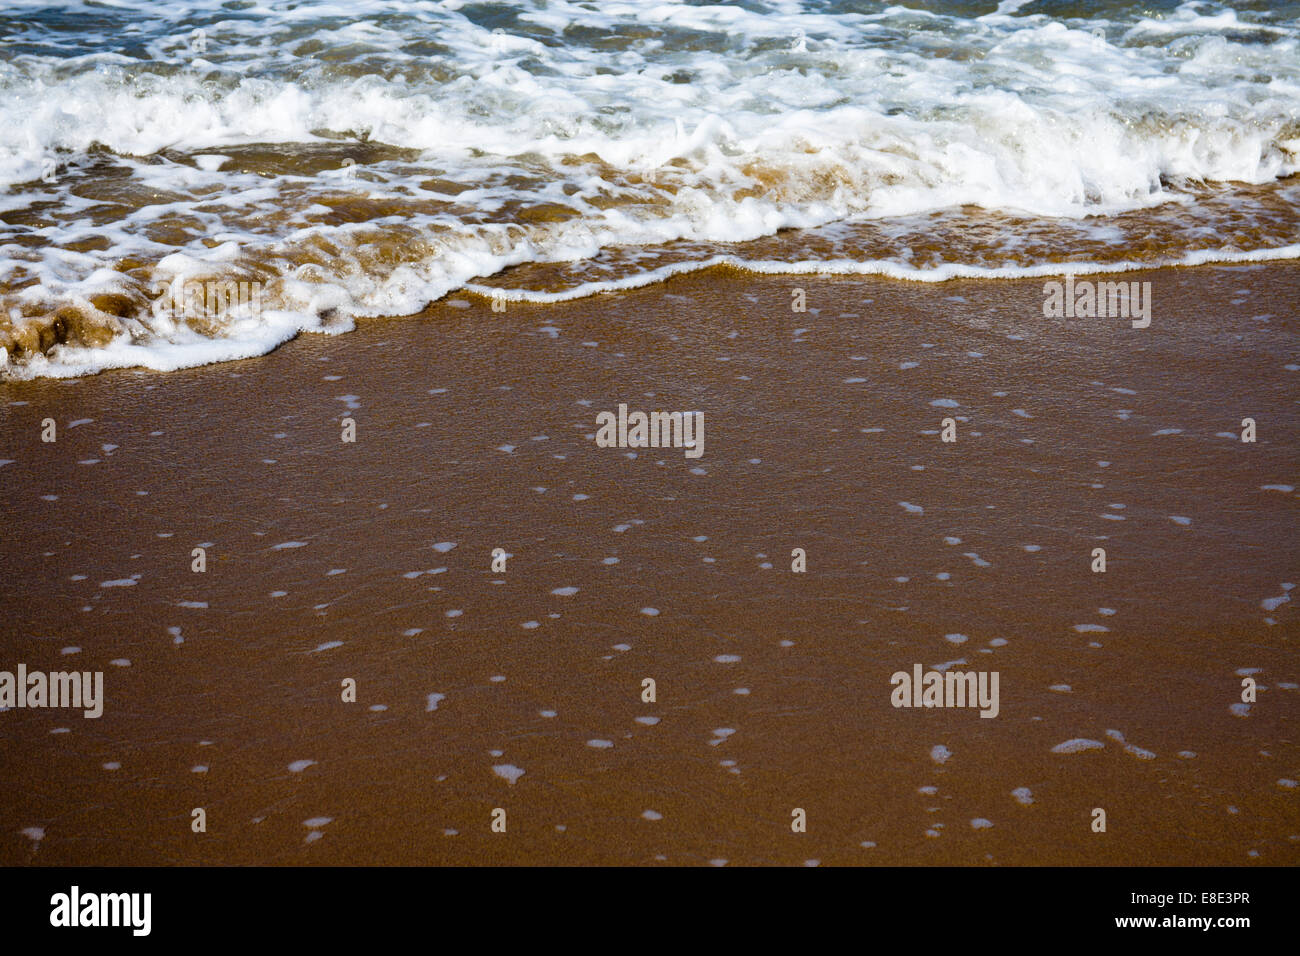 Flache Focus Bild von Wellen an einem Strand Stockfoto